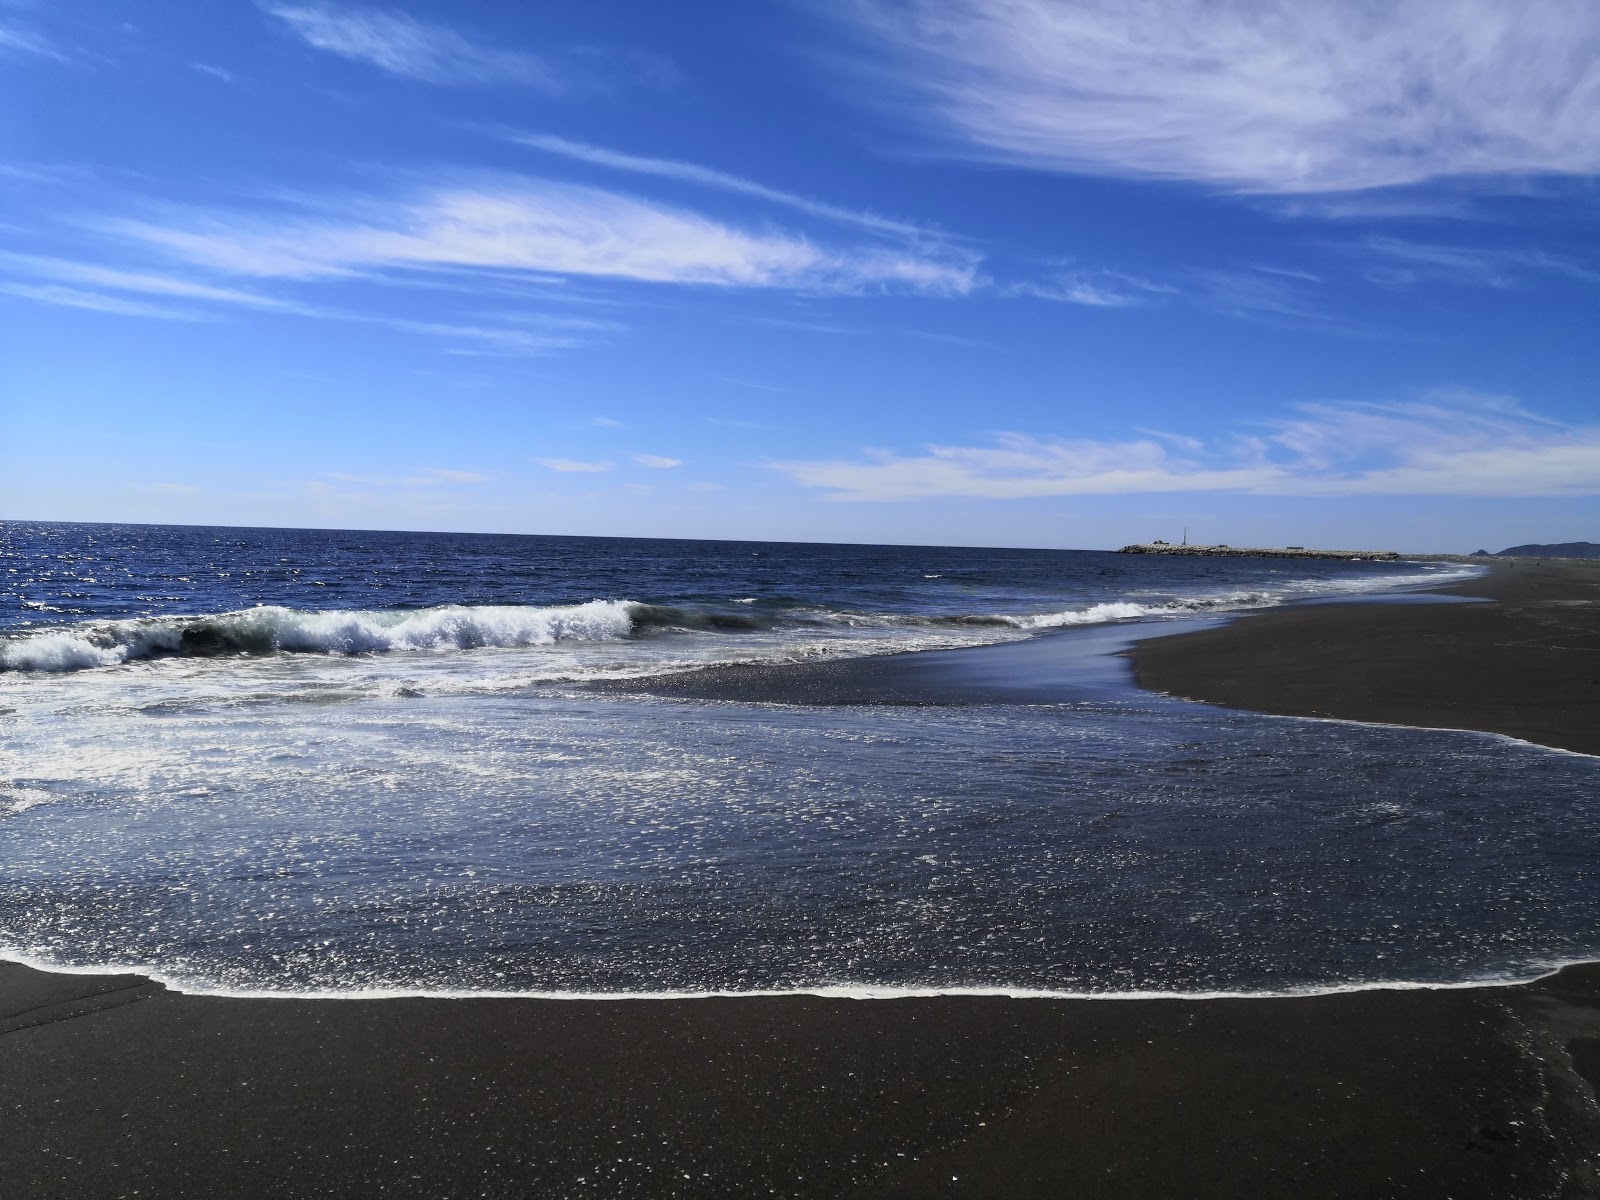 Fotografie cu Playa "El Eden" cu o suprafață de apa pură turcoaz